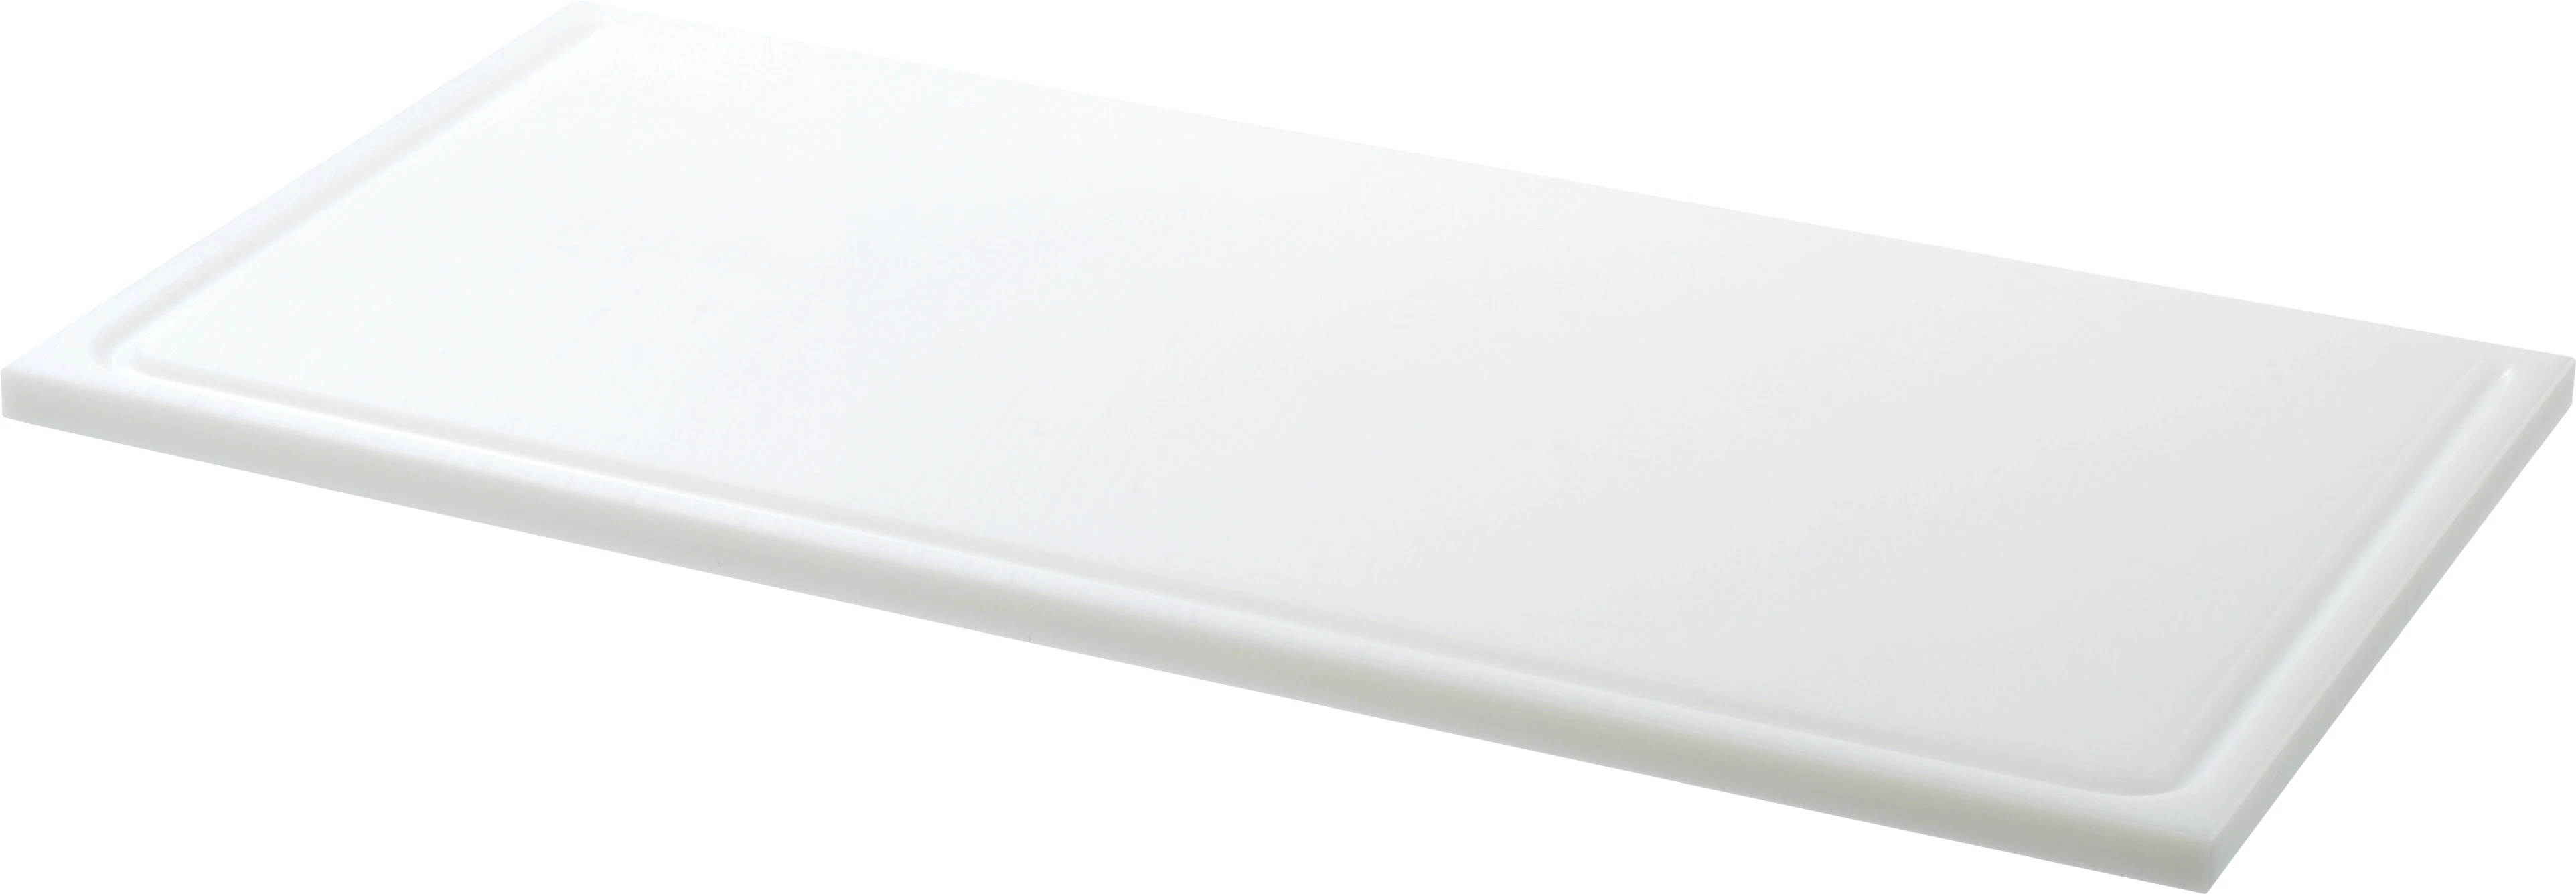 Euroboard skæreplanke, hvid, 75 x 40 x 1,5 cm